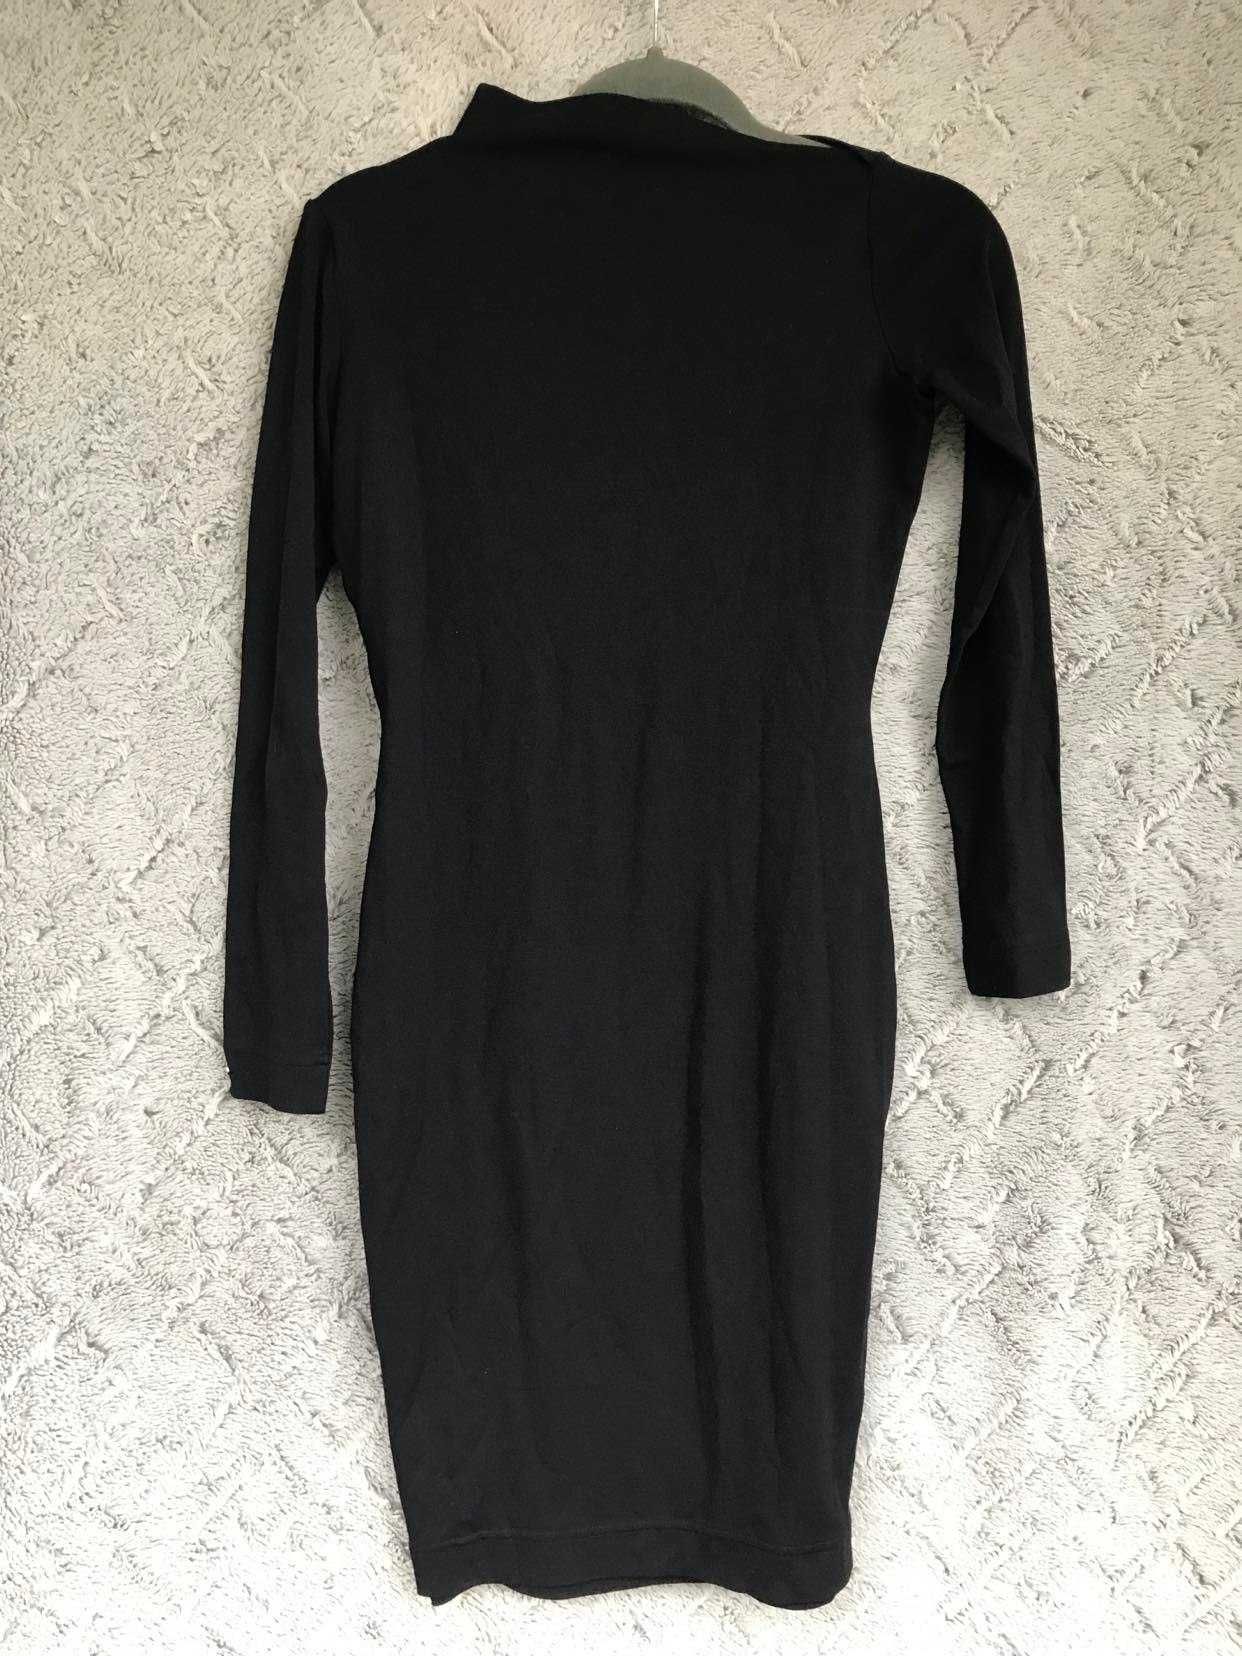 Sukienka mała czarna klasyczna przy ciele Simple XS